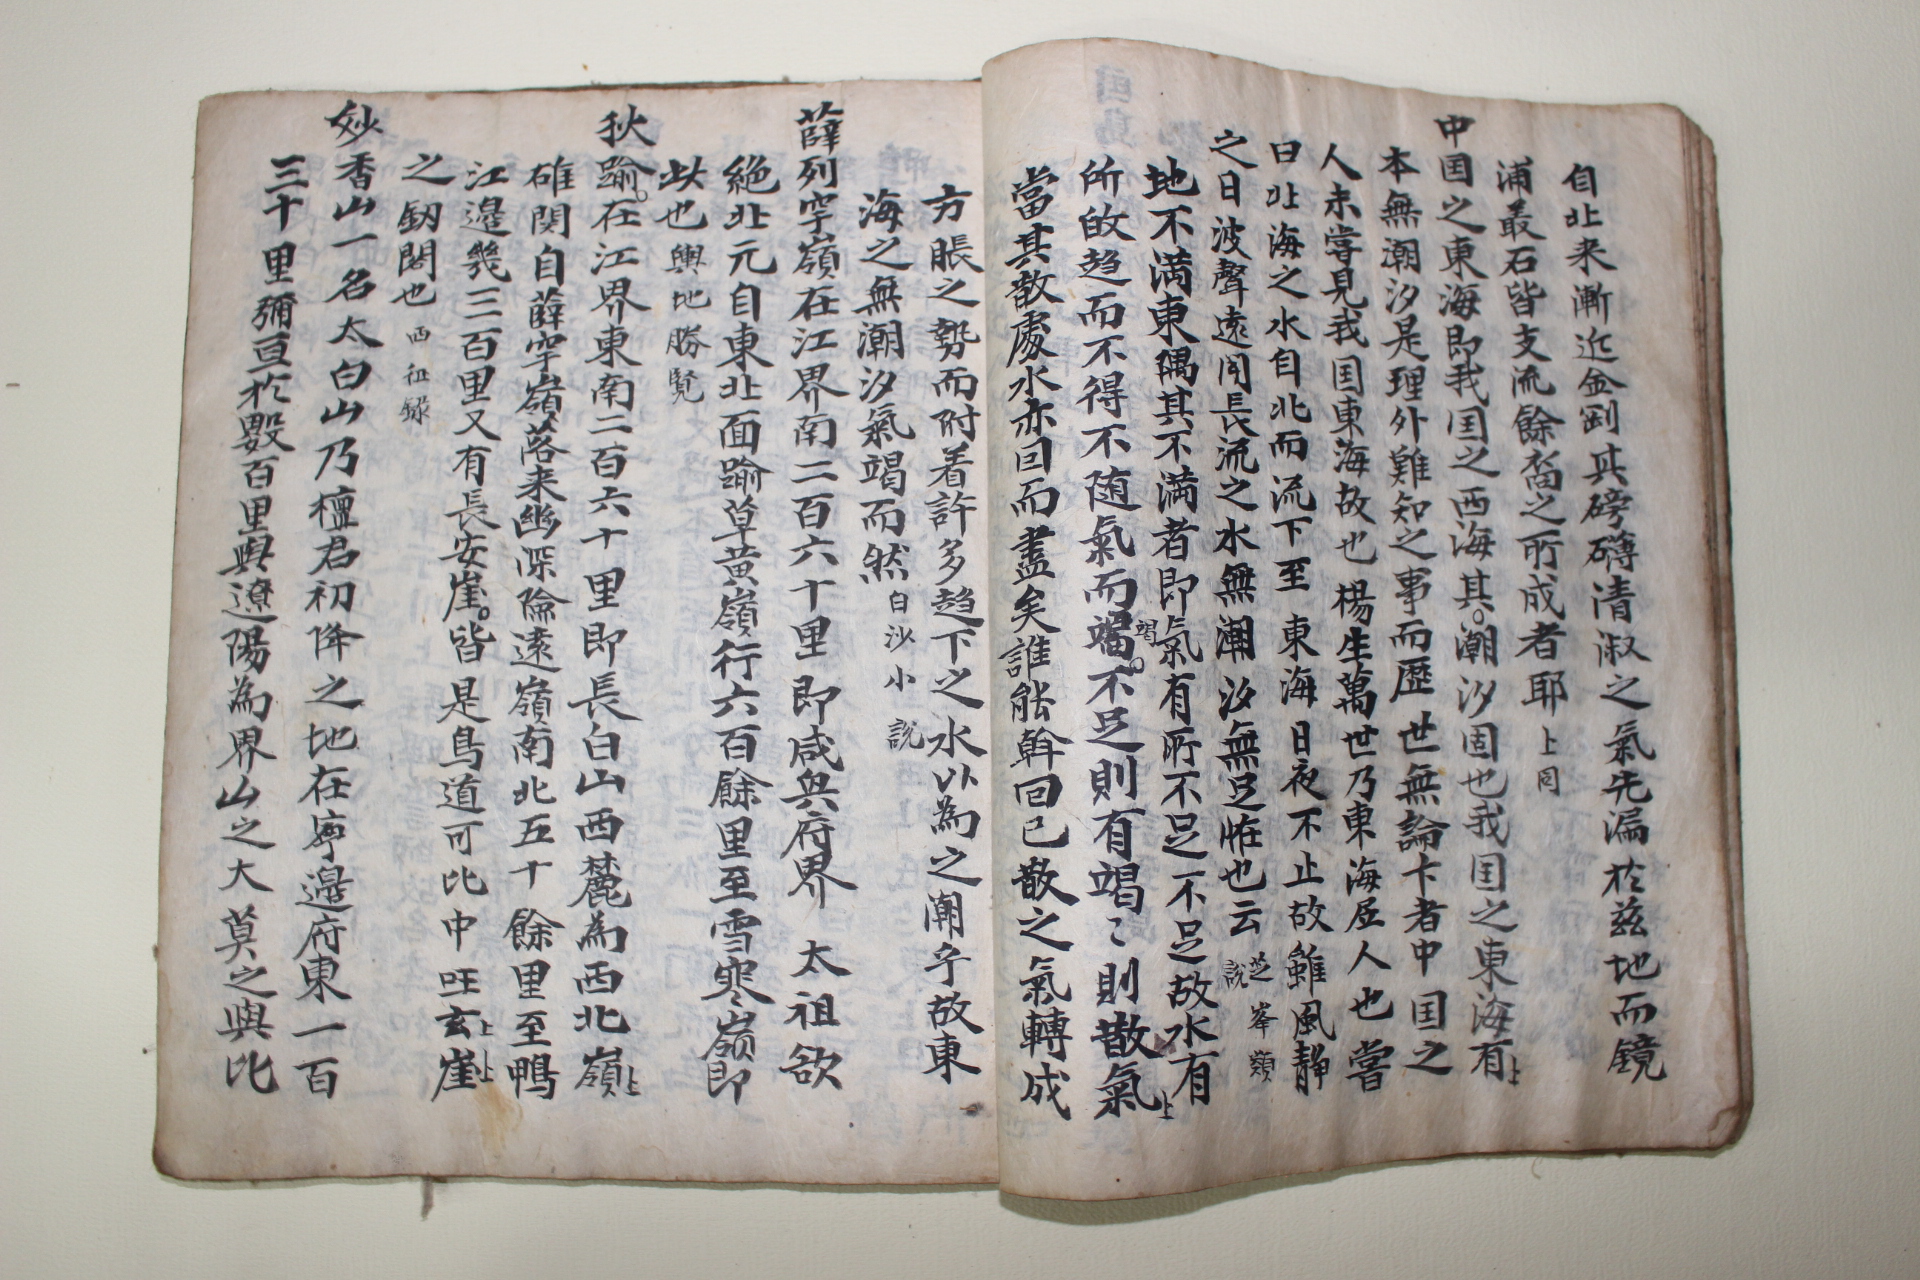 고필사본 조선시대 인물,제도,문물,풍습등을 기록한 견첩록(見睫錄)